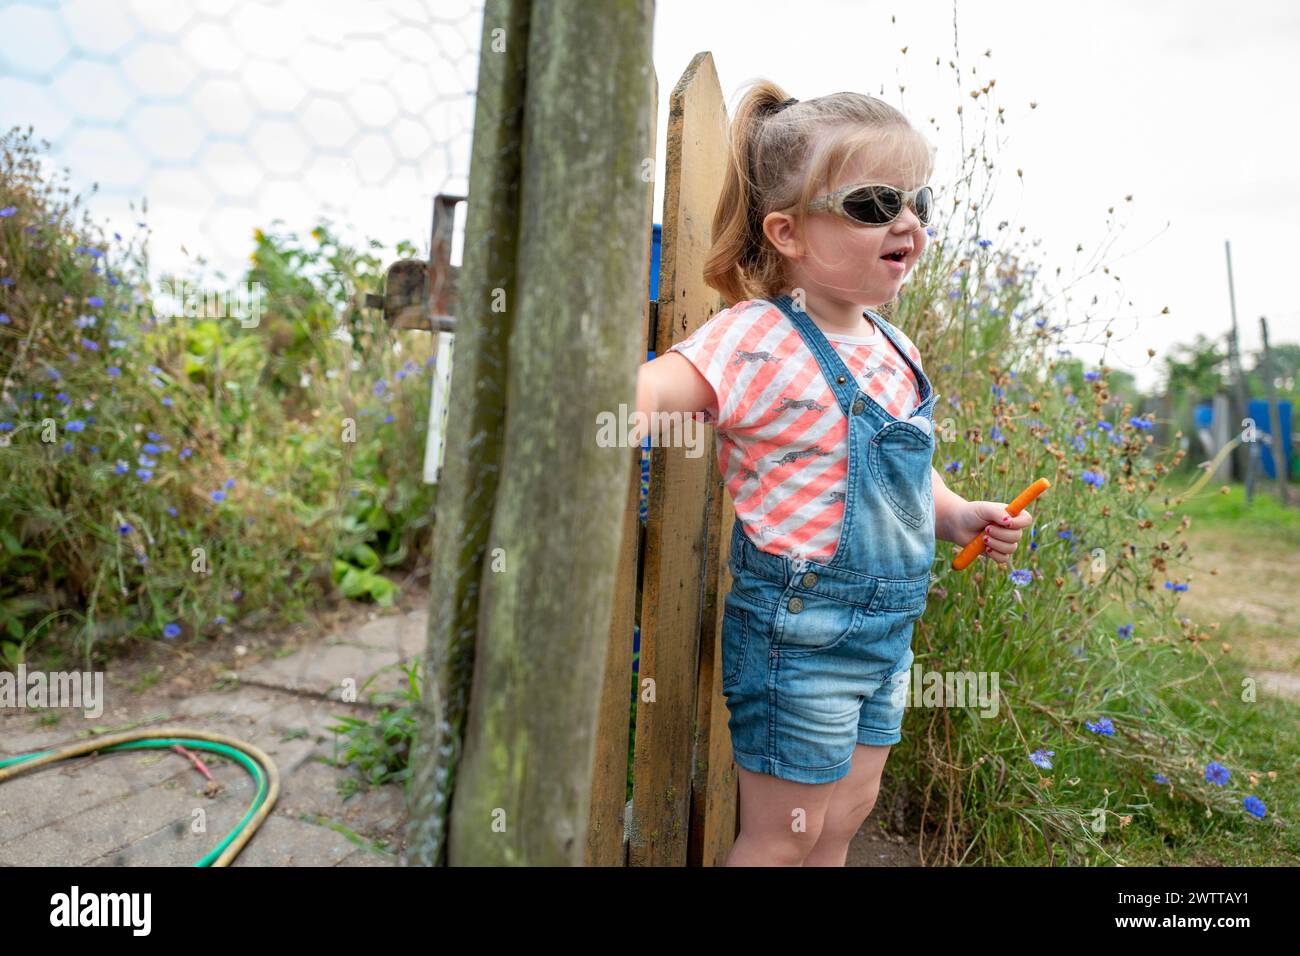 Bambina che si gode una giornata di sole in giardino con la sua bacchetta a bolle d'aria. Foto Stock